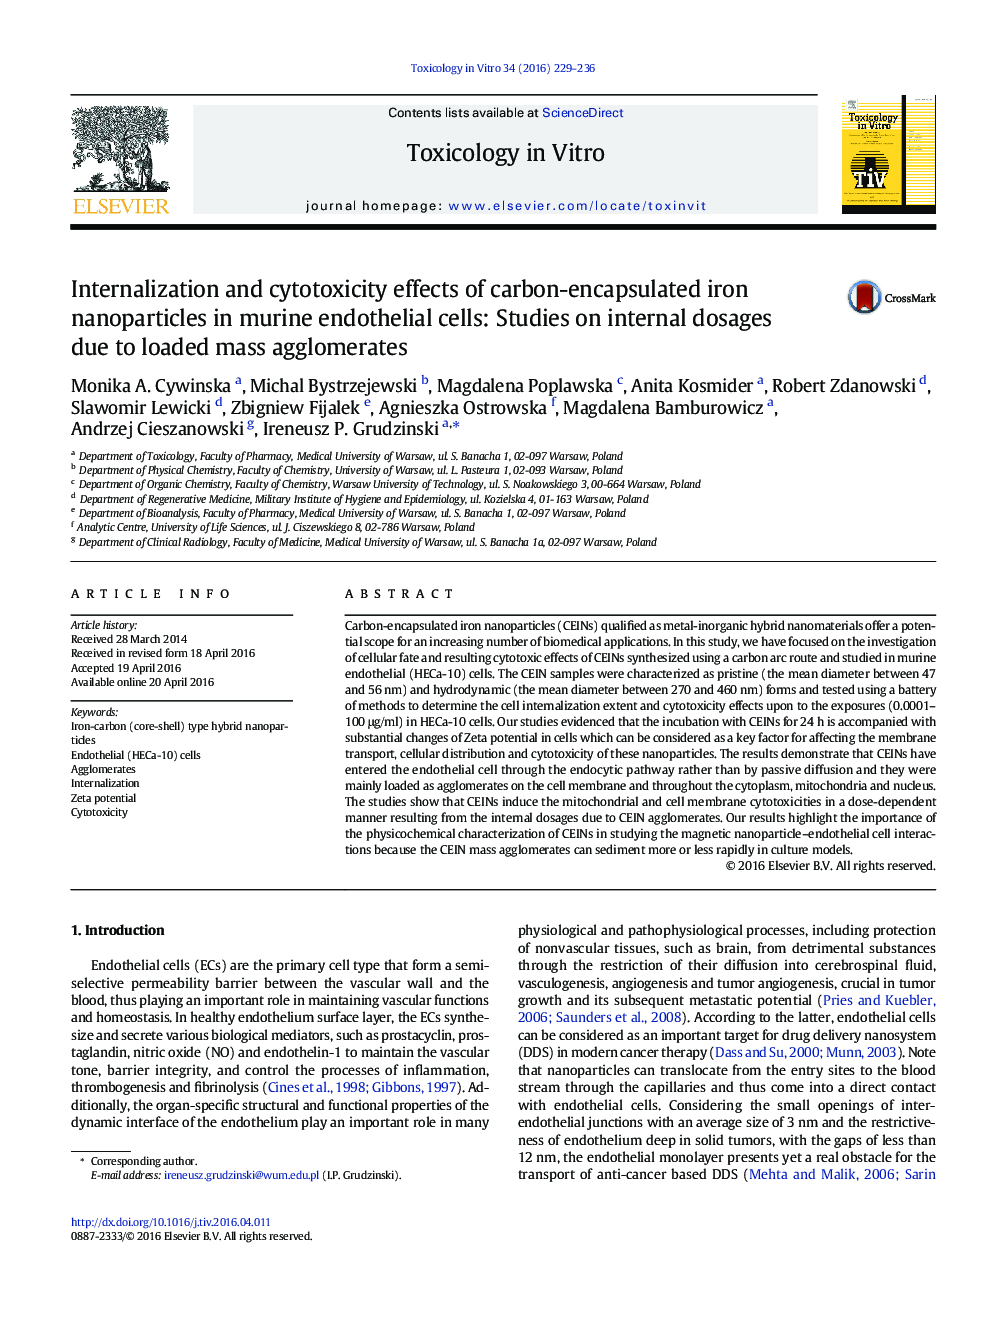 اثرات داخلی و اثر سیتوتوکسیک نانو ذرات آهن کربن در سلولهای اندوتلیال موش صحرایی: مطالعات انجام شده در مورد دوزهای داخلی ناشی از آگلومره های توده ای 